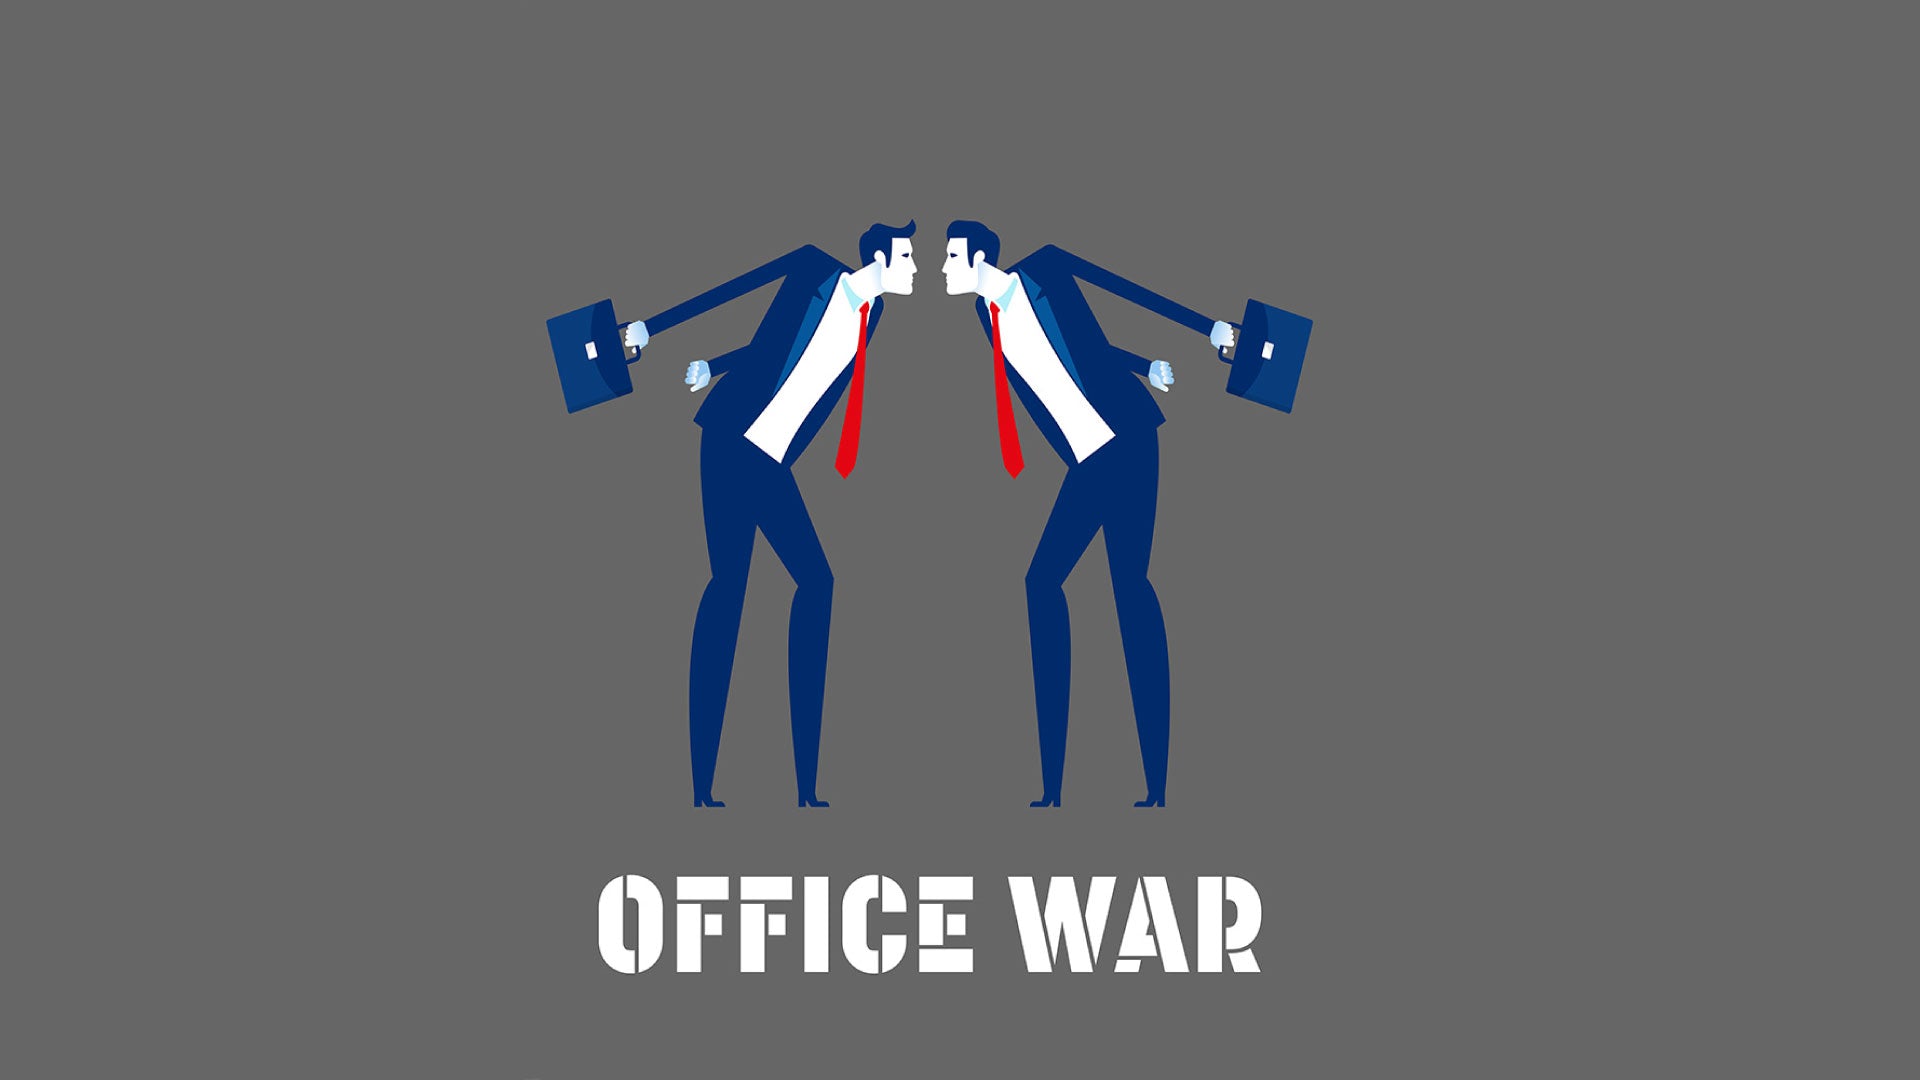 Office War